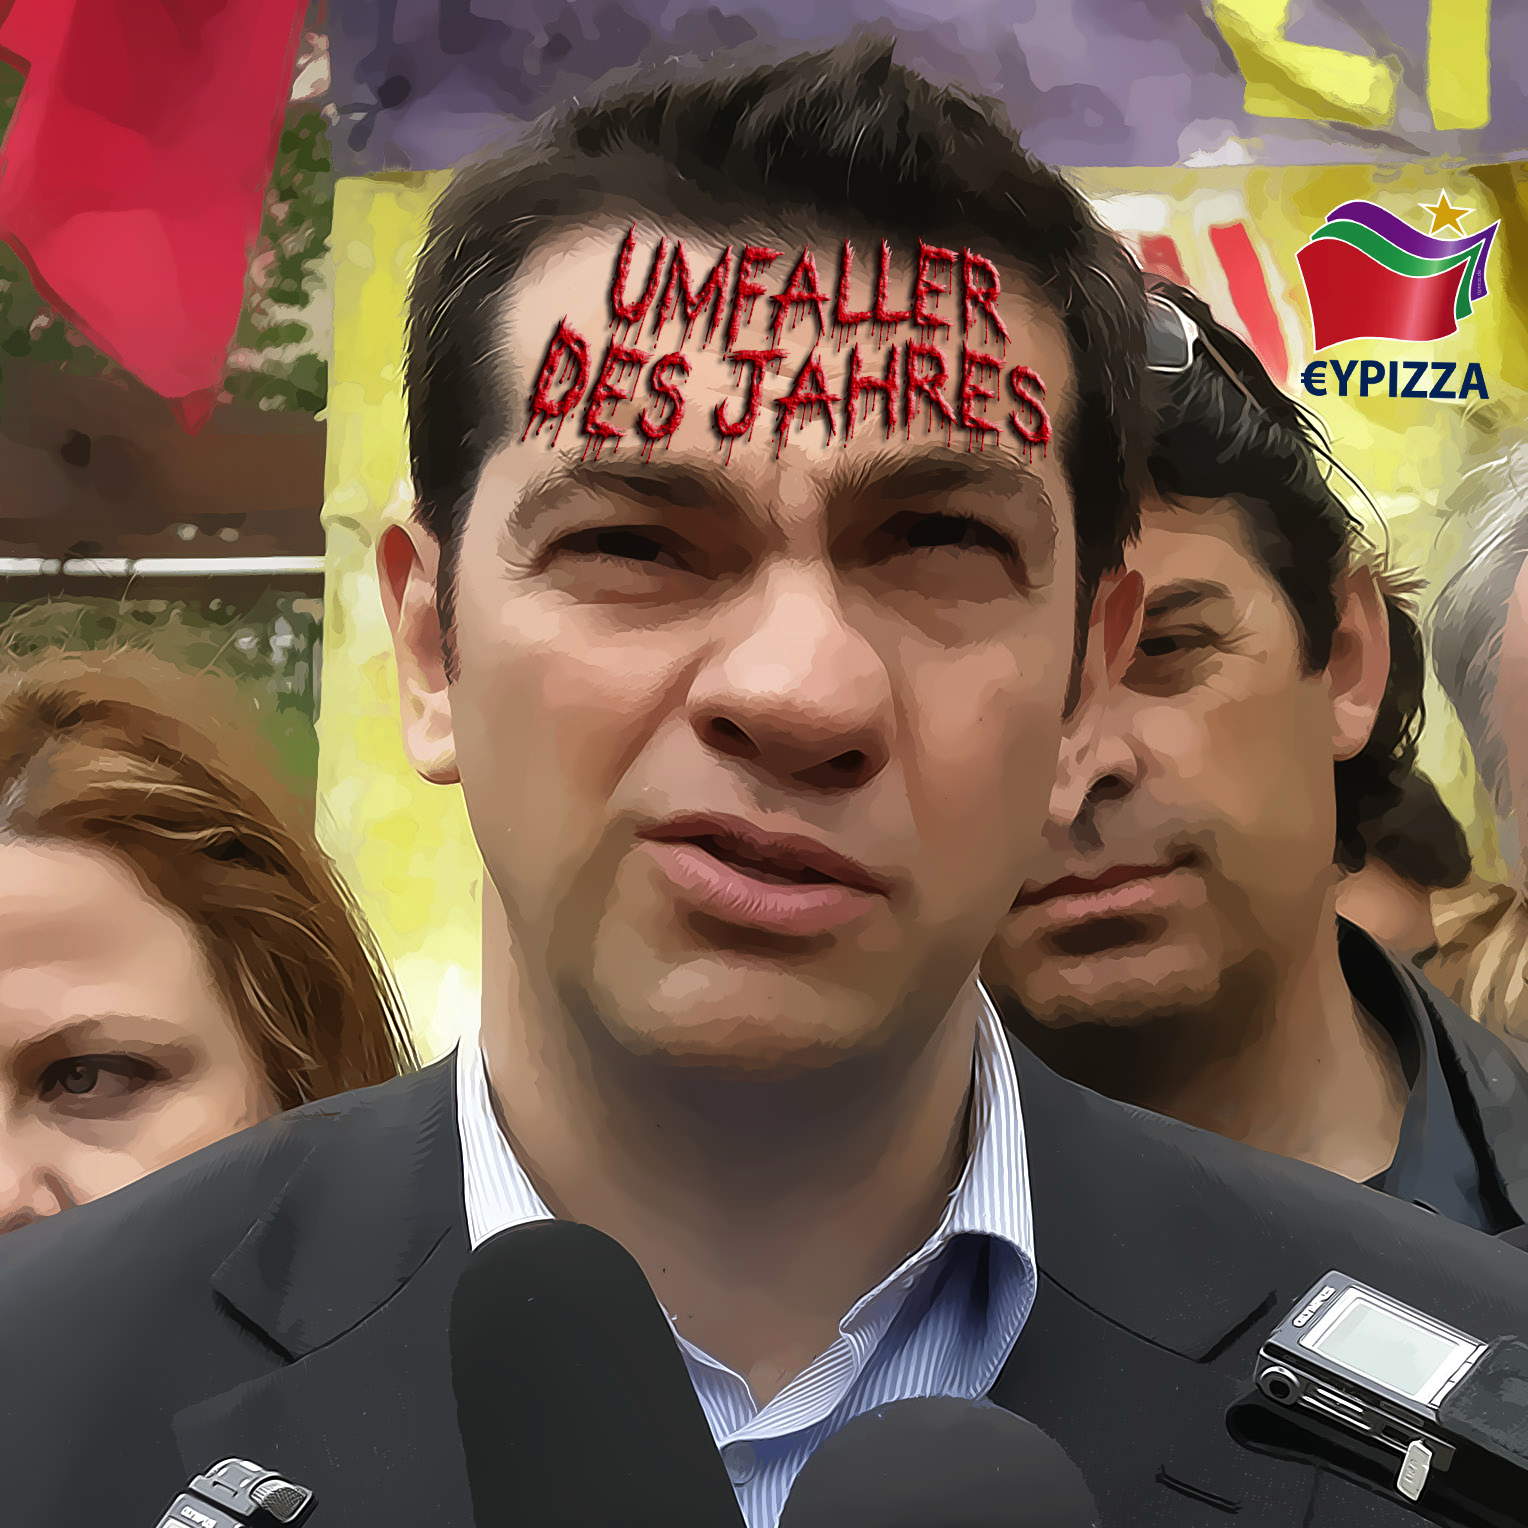 Alexis Tsipras Parteifuehrer SYRIZA Umfaller des Jahres Griechenland Aufruhr Revolution Branding qpress